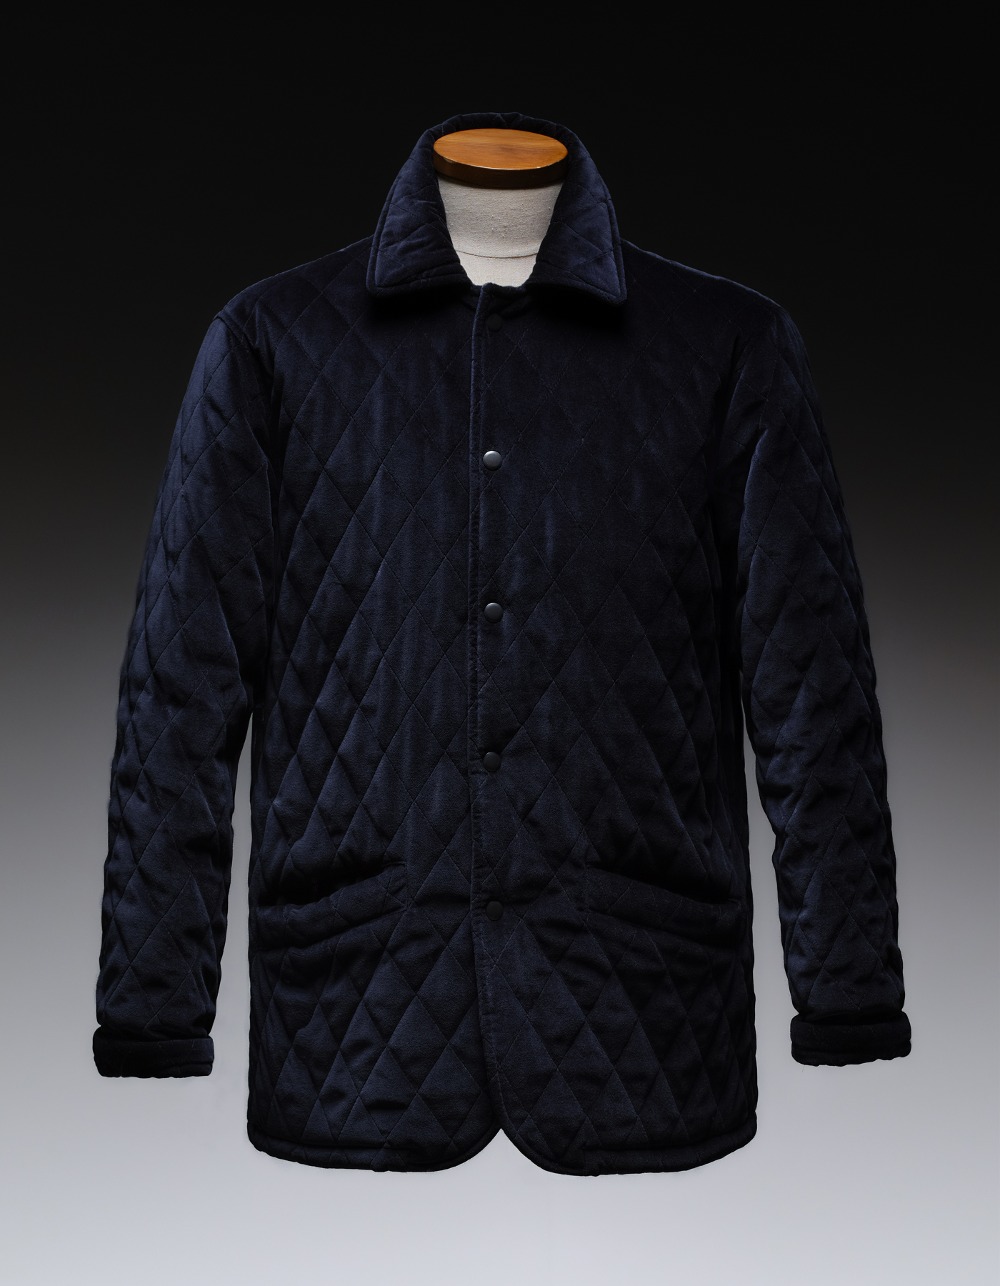 Velquilt jacket(dark blue)